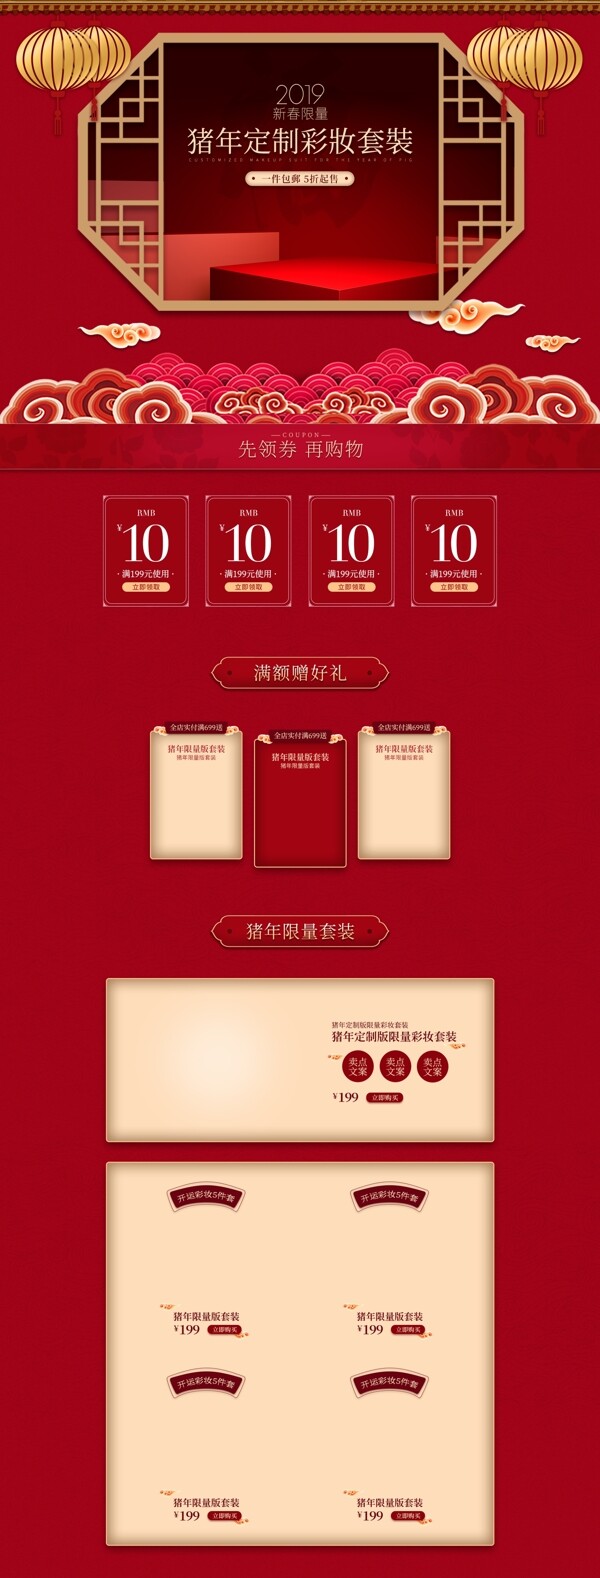 天猫简约喜庆红色彩妆新年限量版首页模板